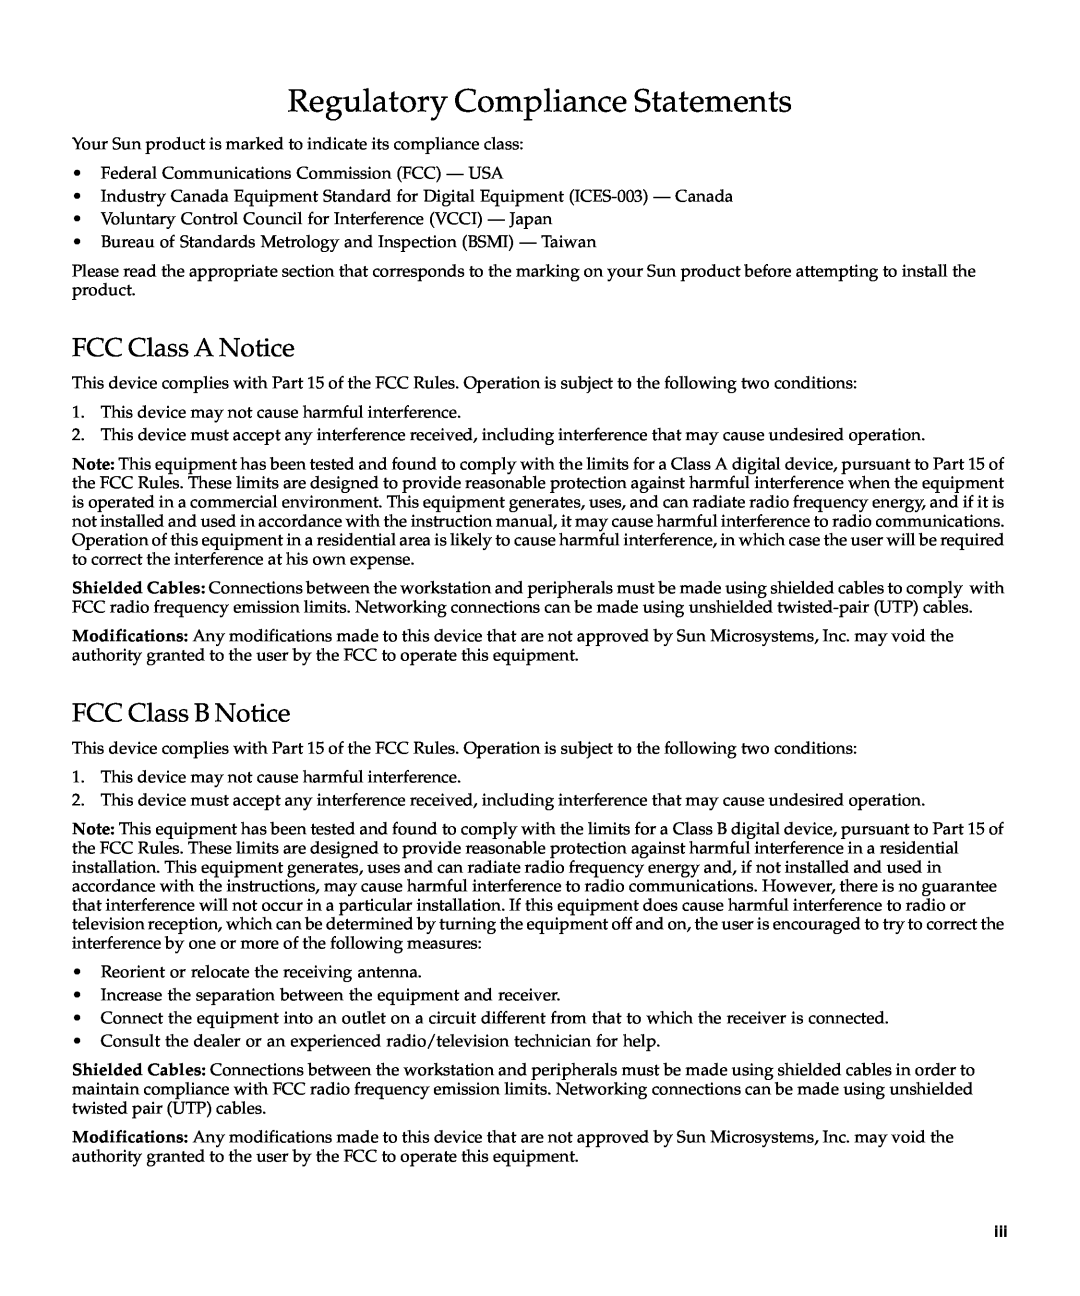 Sun Microsystems XVR-100 manual Regulatory Compliance Statements, FCC Class A Notice, FCC Class B Notice 